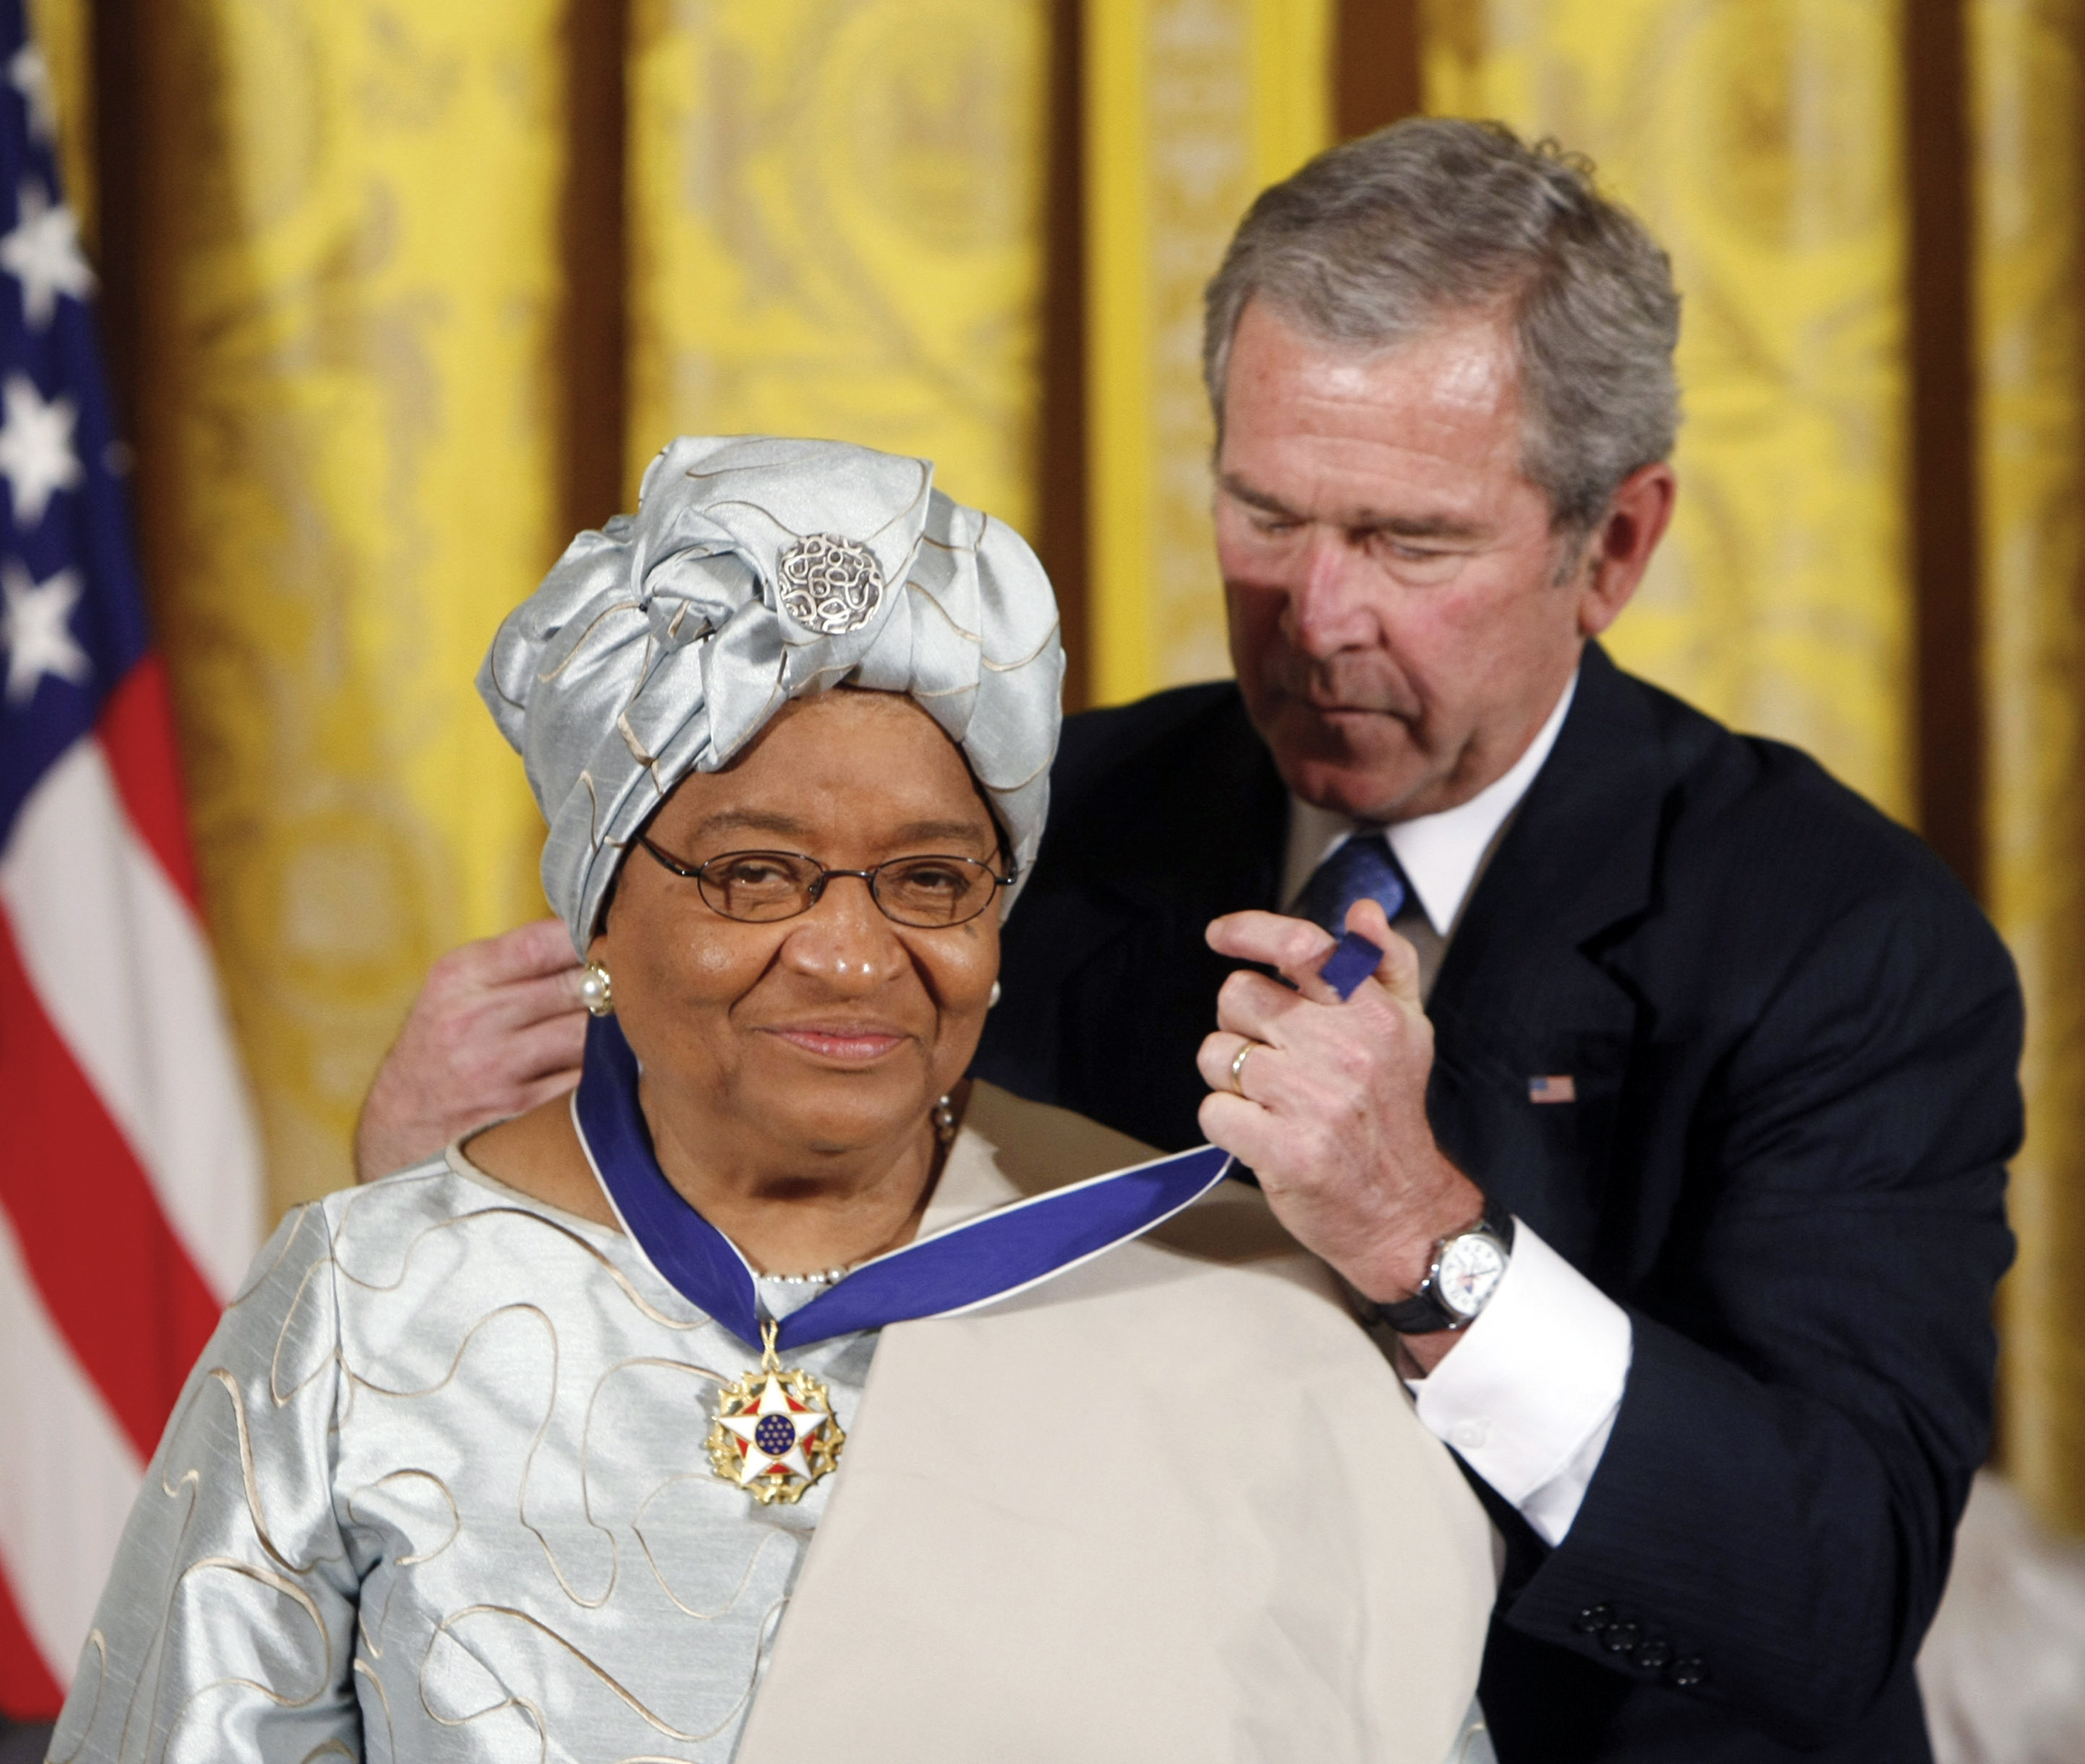 u.Prezident George W. Bush představuje Prezidentskou medaili svobody prezidentovi Libérie, Ellen Johnson Sirleaf, na ceremoniálu v Bílém domě v roce 2005. (AP Images/Gerald Herbert)